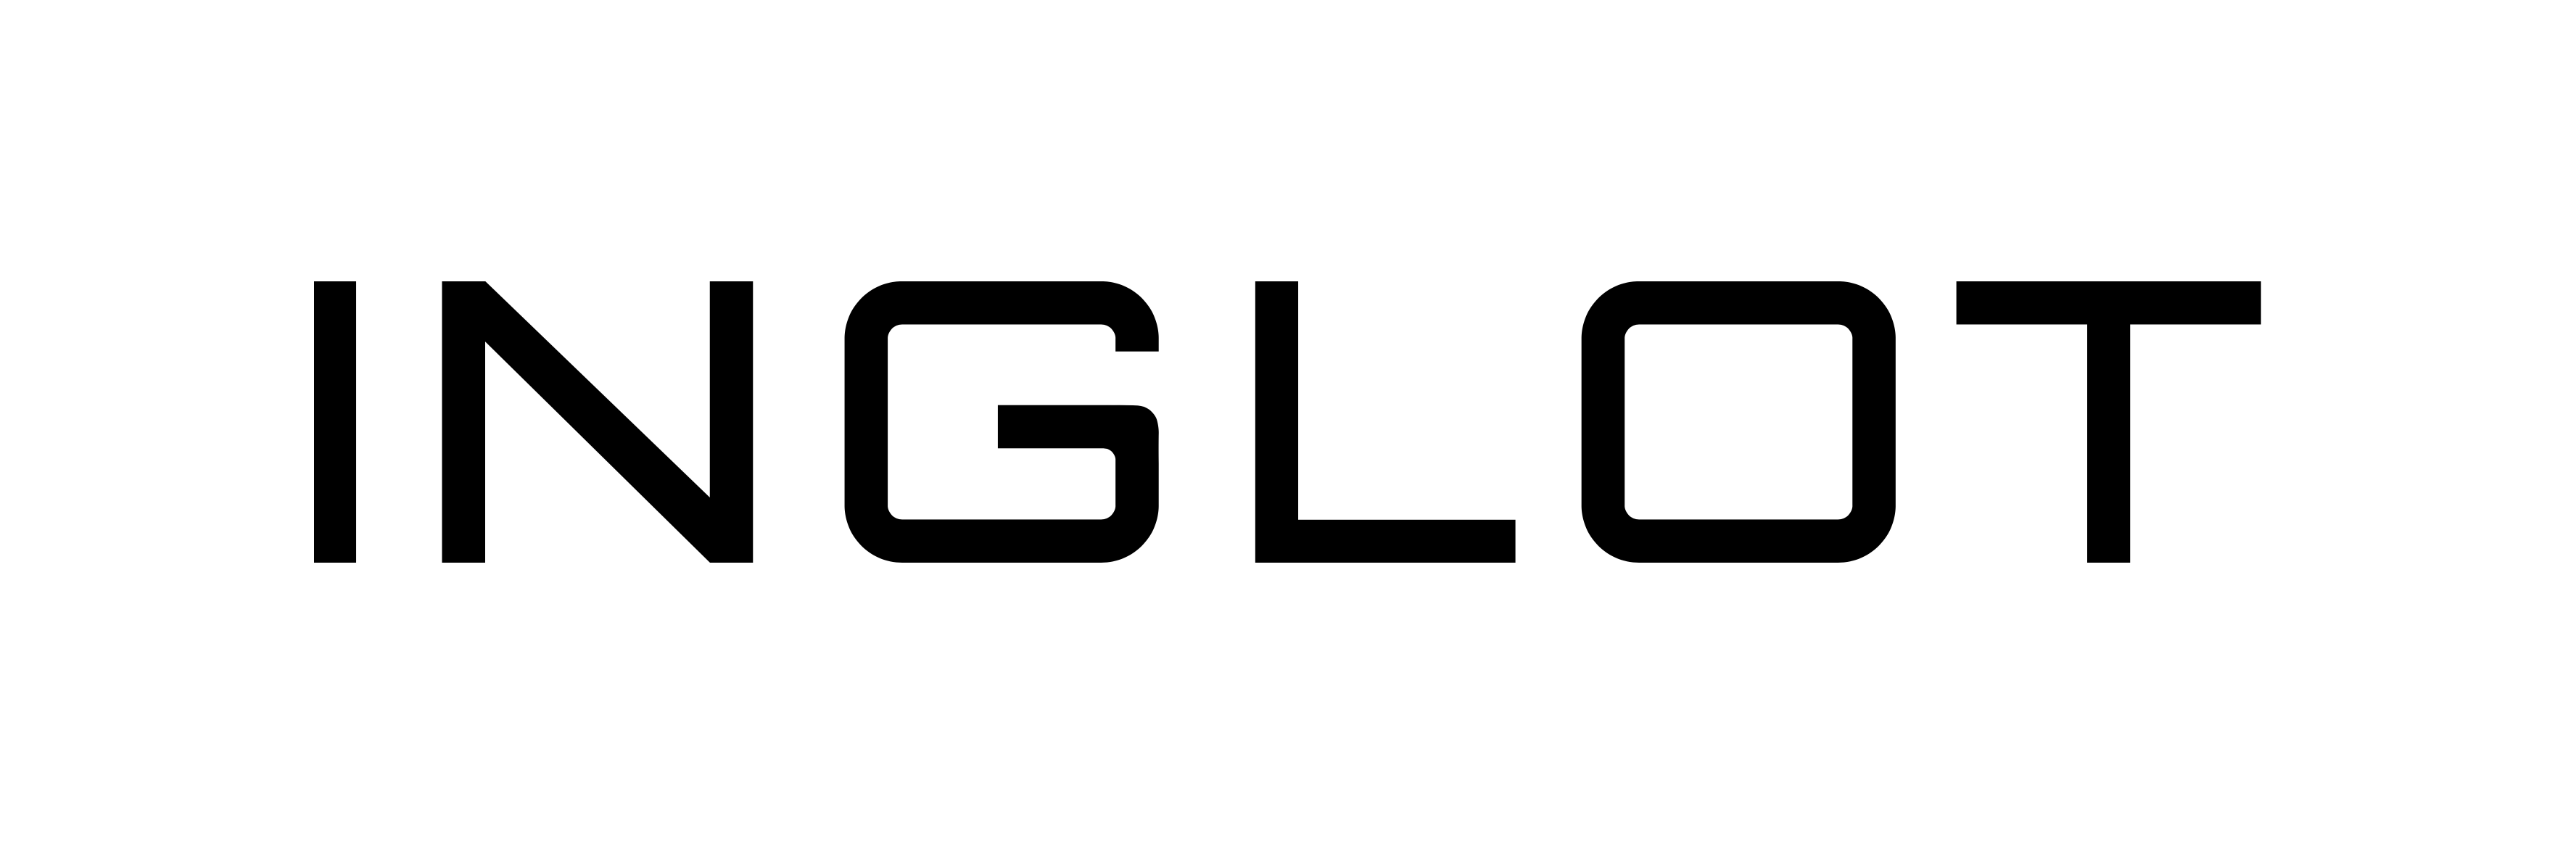 inglot-logo.png